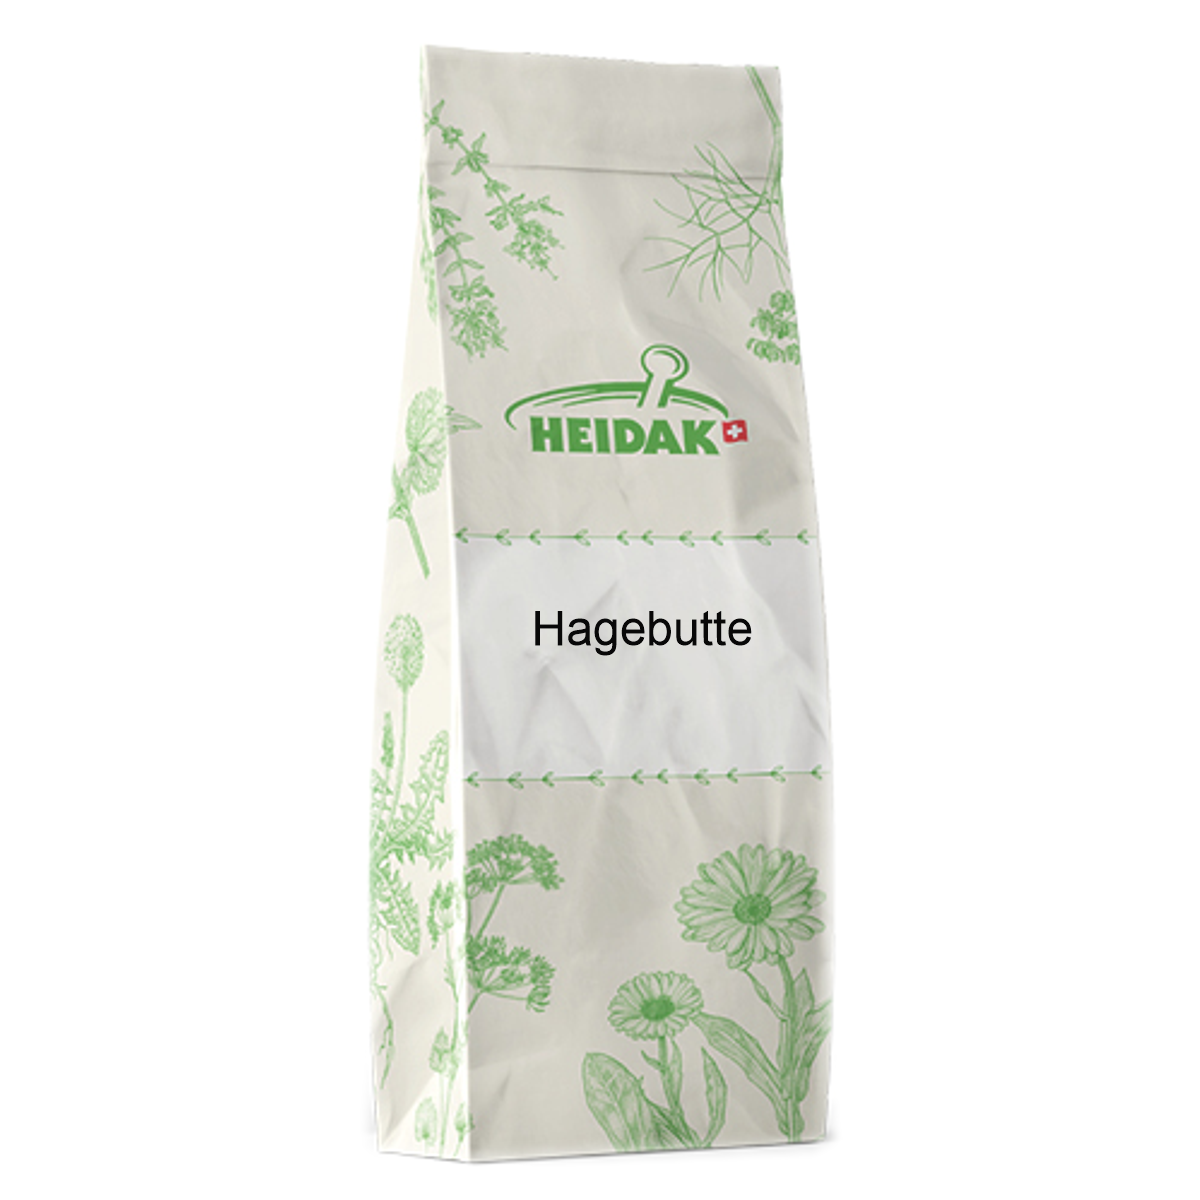 Heidak_Hagebutte_online_kaufen